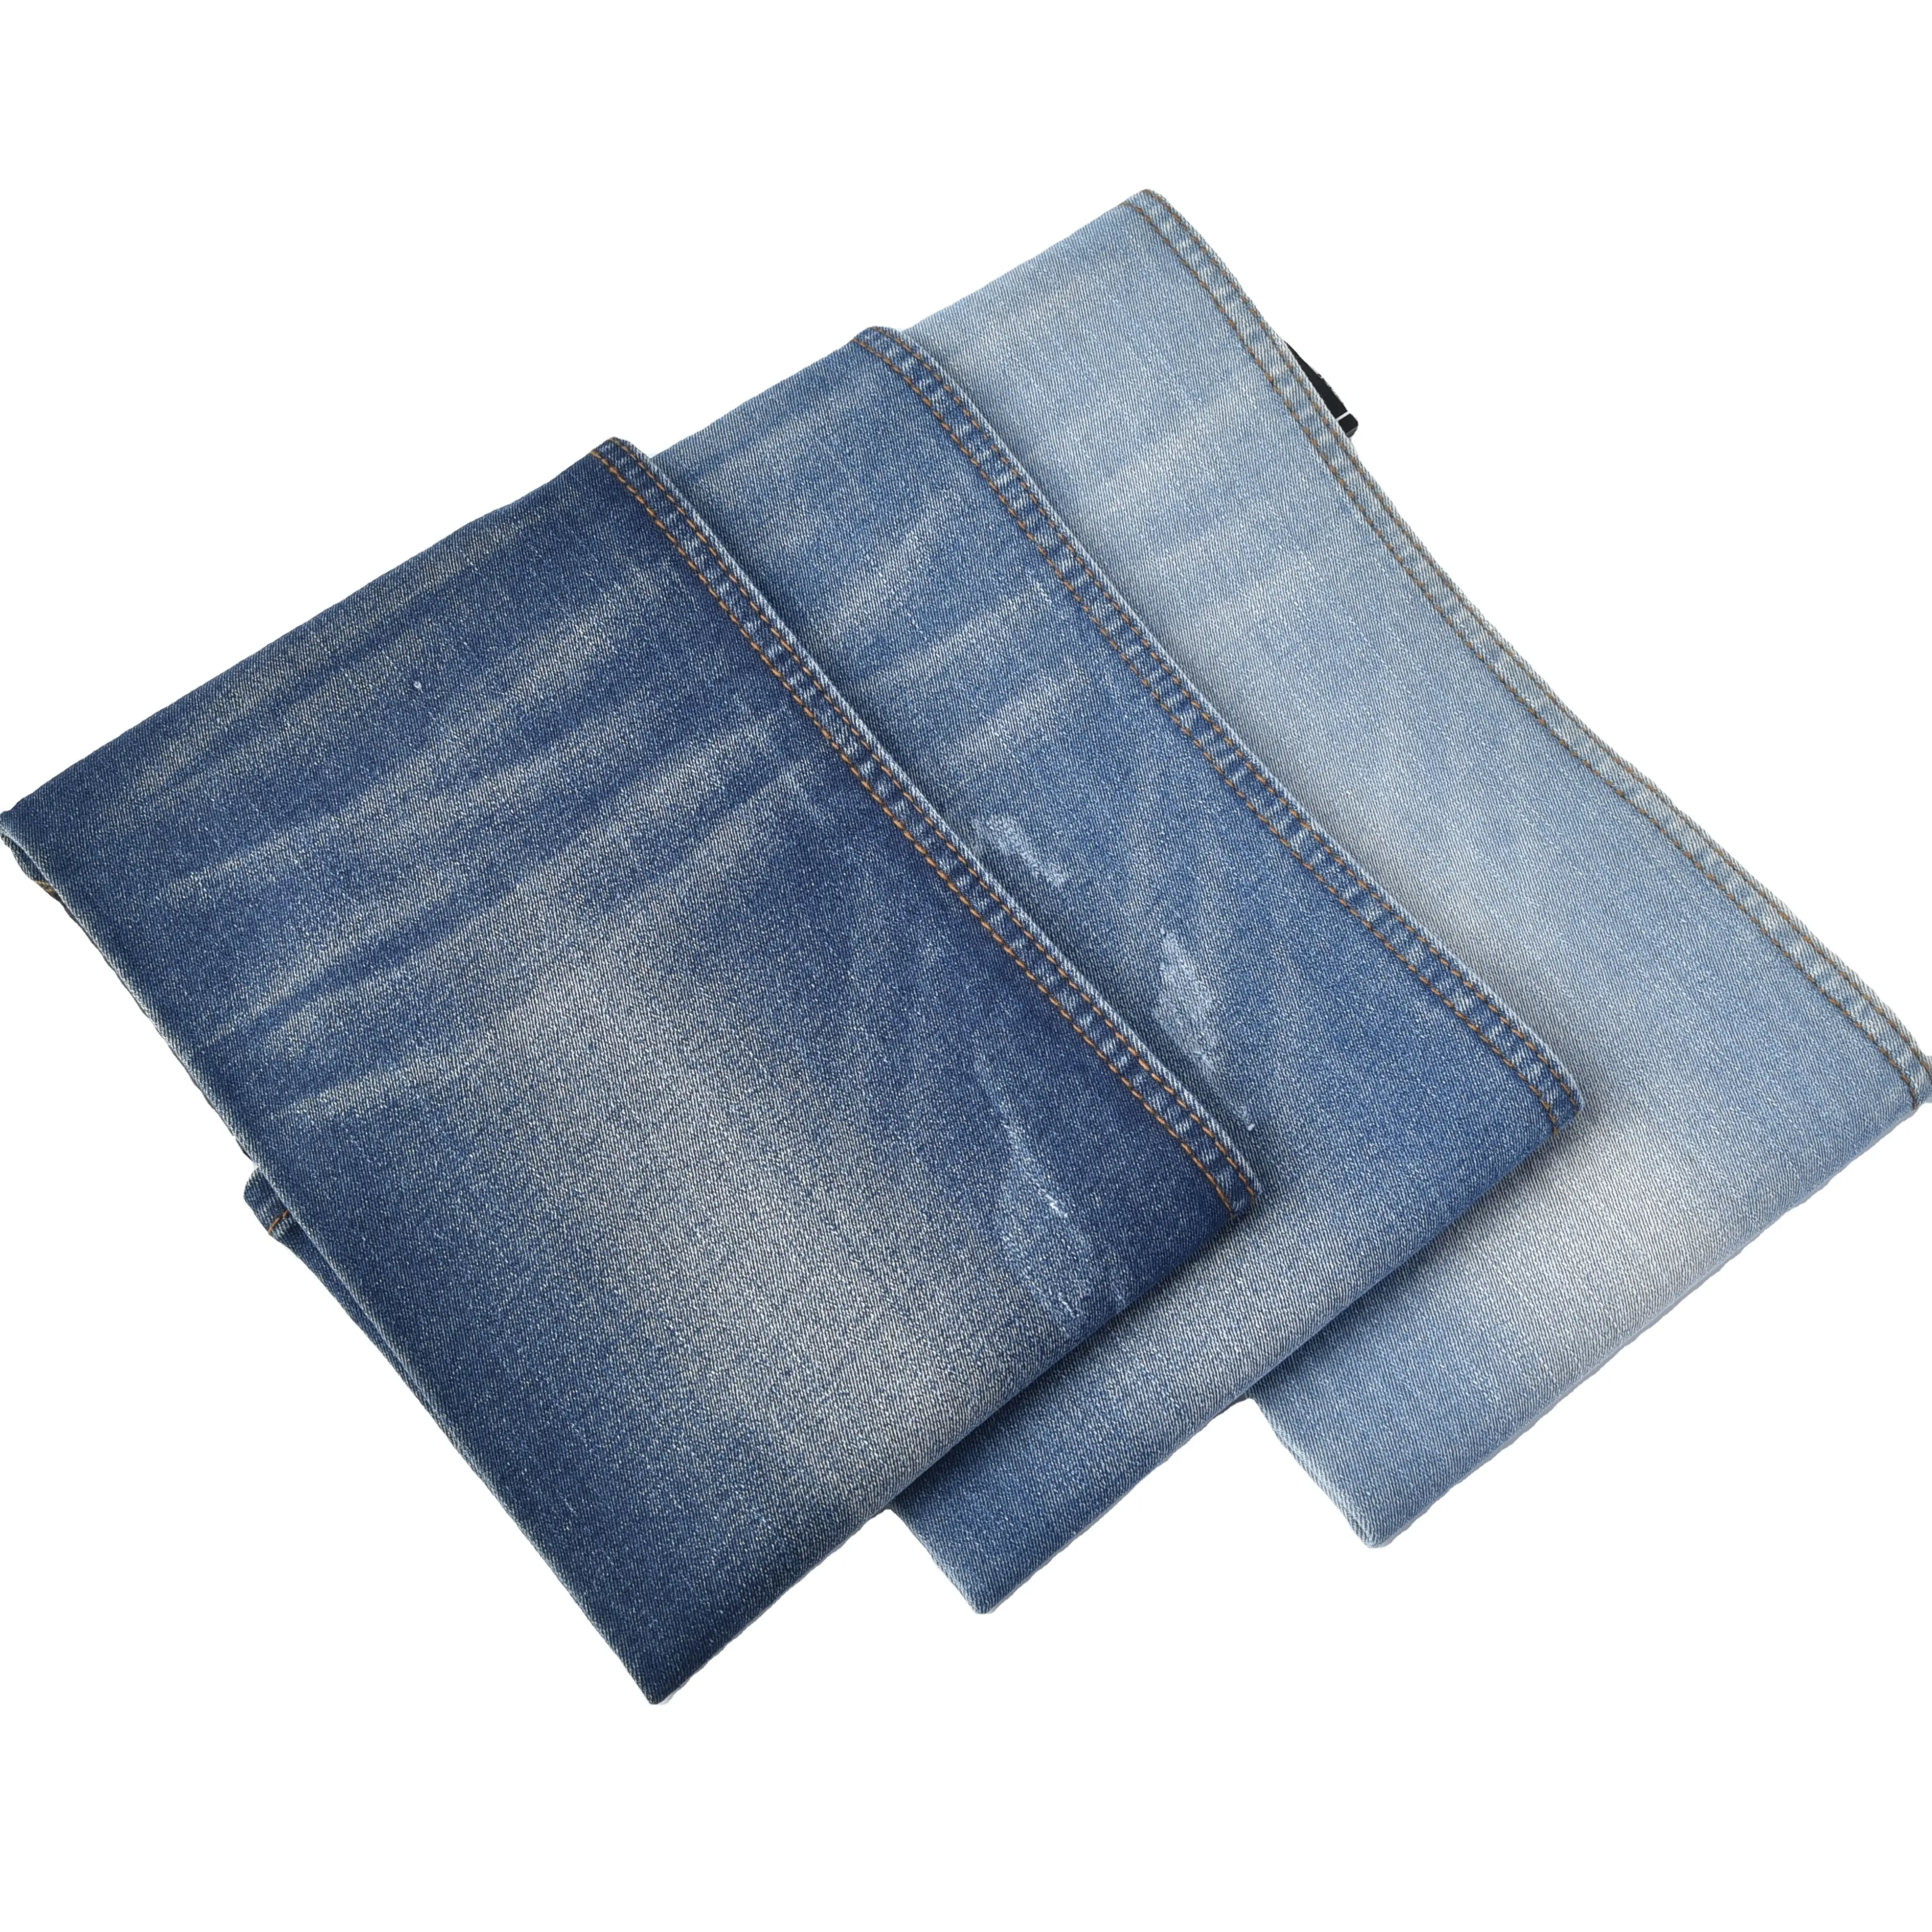 Obral Besar Jeans Denim Indigo Jeans Kain Denim Regang Tinggi untuk Celana Wanita Buatan Tiongkok